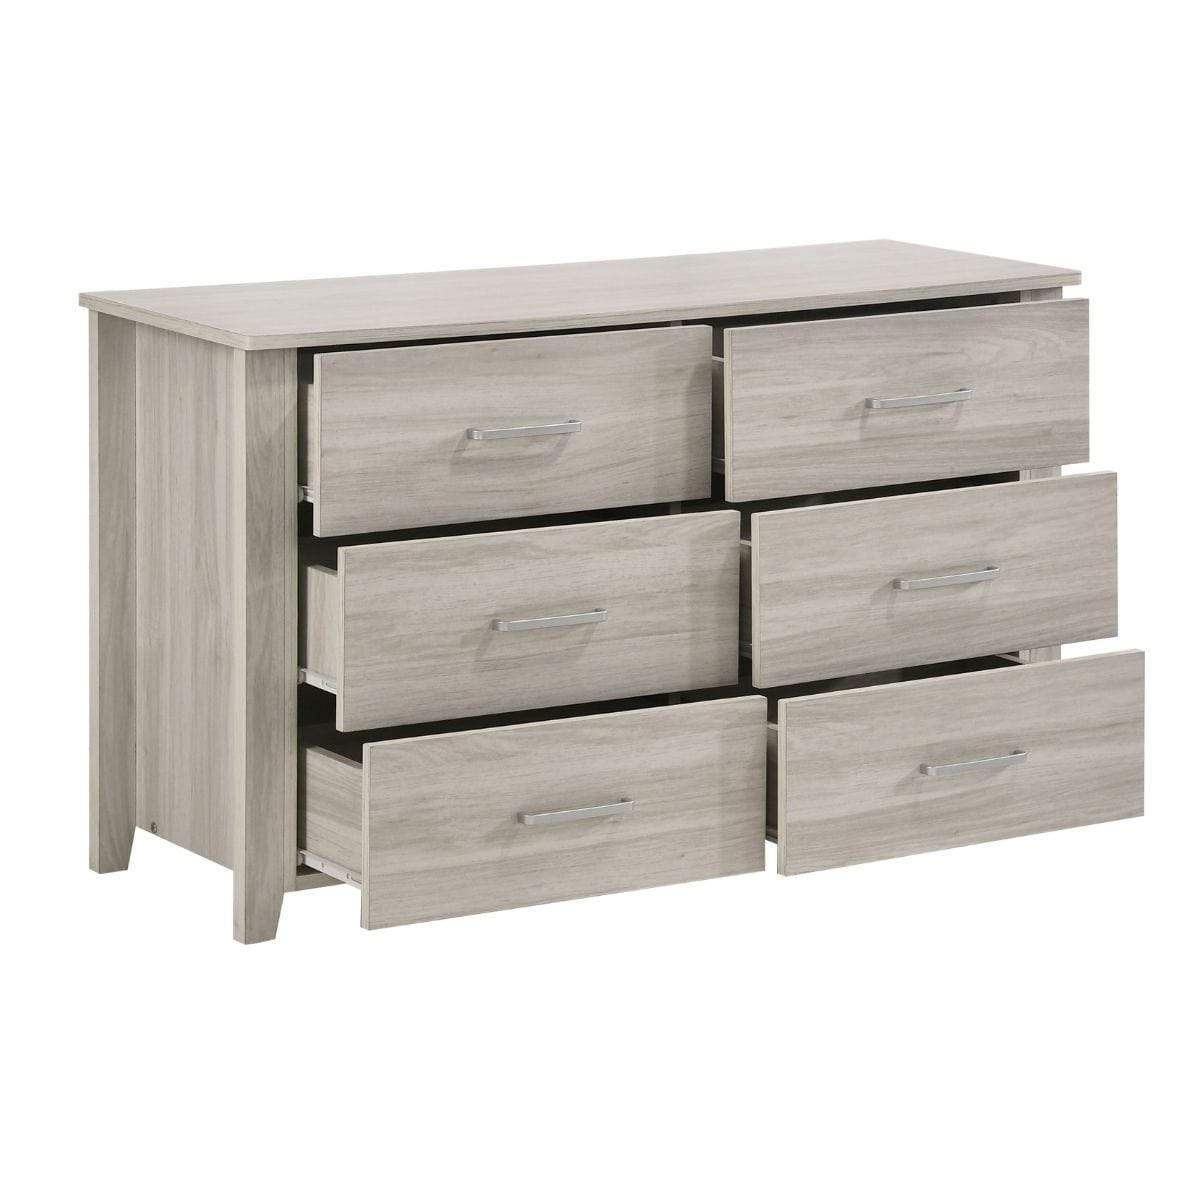 White 6 Chest of Drawers Bedroom Cabinet Storage Tallboy Dresser - Newstart Furniture